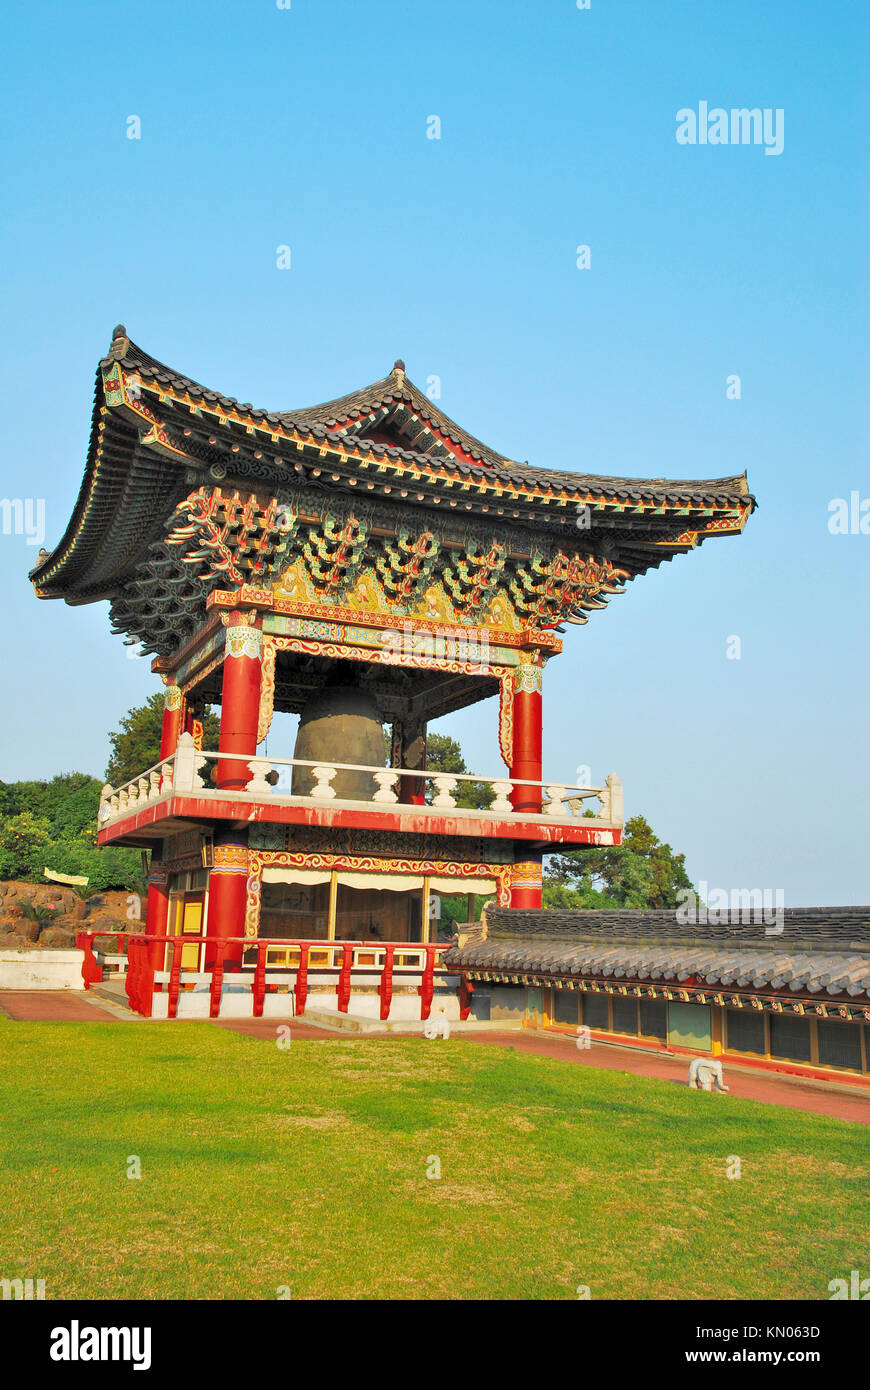 Koreanischen Stil Tempel Pavillon detaillierte Architektur mit bue Himmel Hintergrund. Ein Symbol der Religion, Glauben, Respekt, und Kultur. Stockfoto